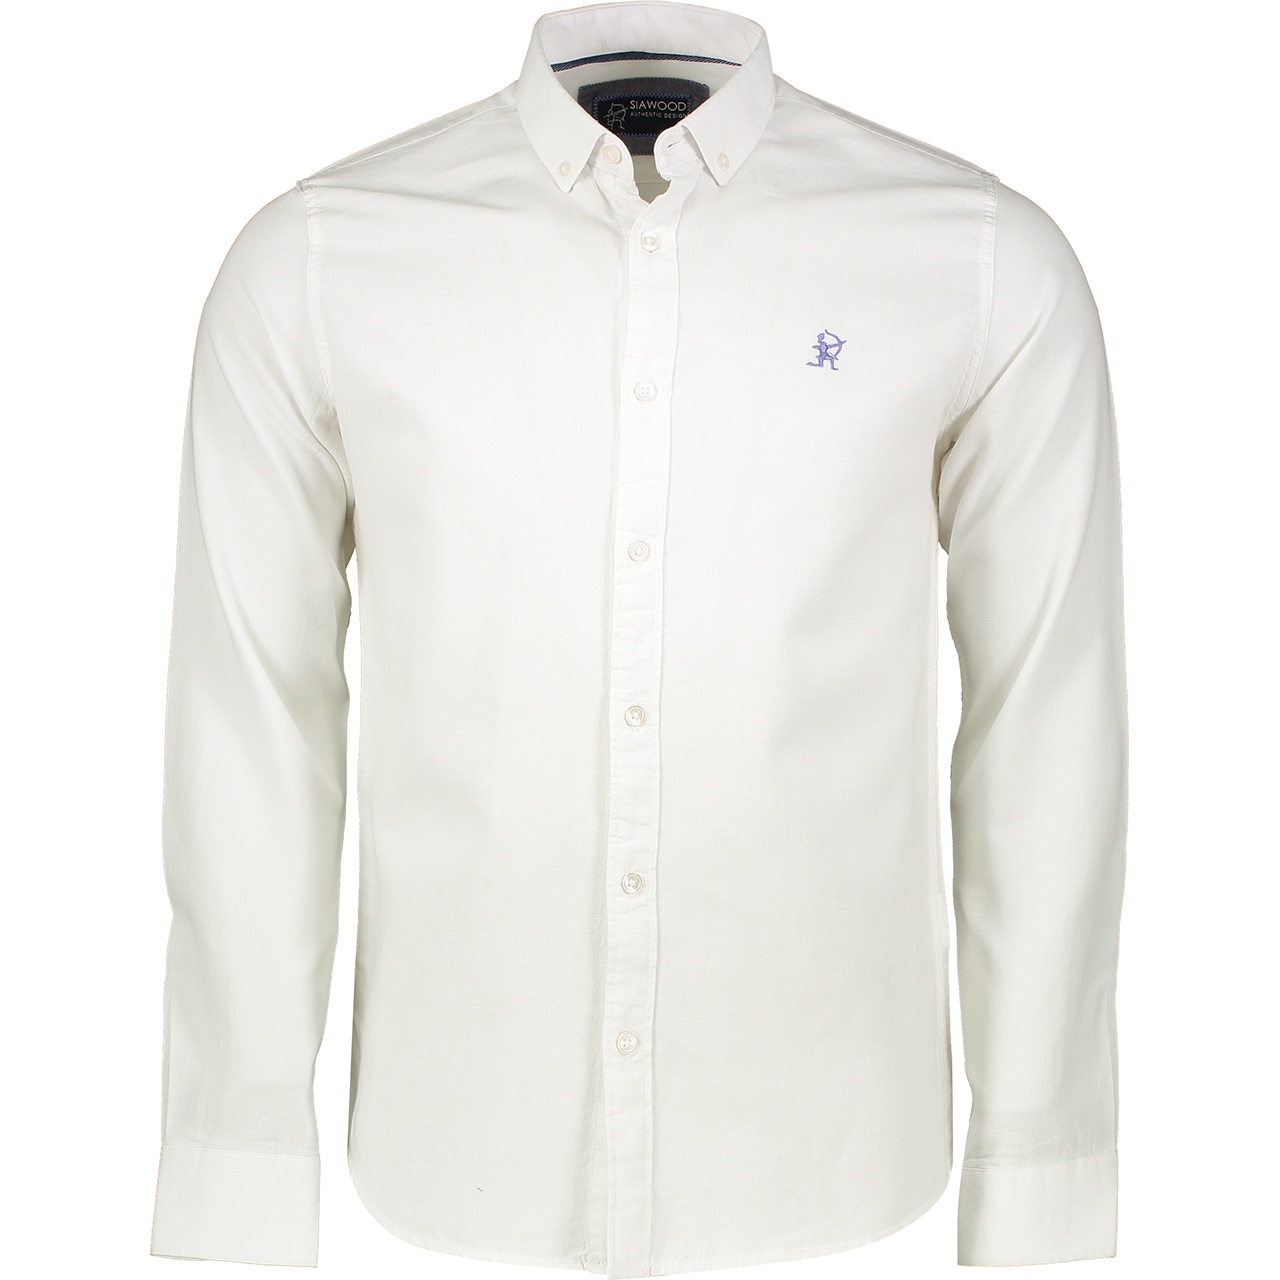 پیراهن مردانه سیاوود مدل SHIRT-32922 W0000 رنگ سفید